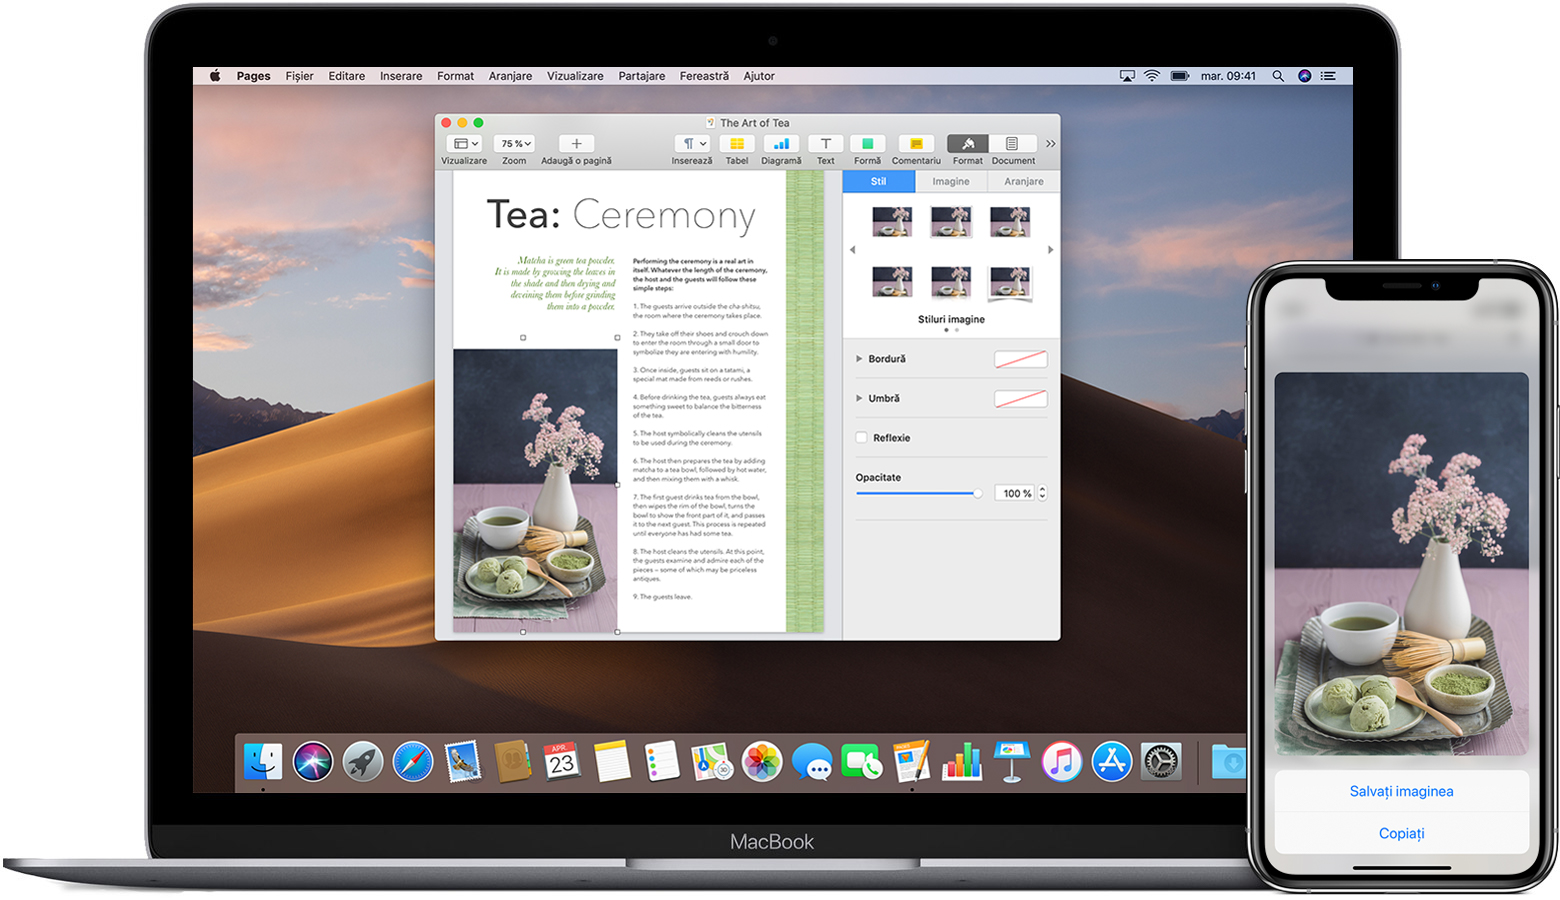 Un iPhone care afișează o imagine cu opțiunea Copiere pe ecran și un MacBook cu un document Pages deschis care conține aceeași imagine.